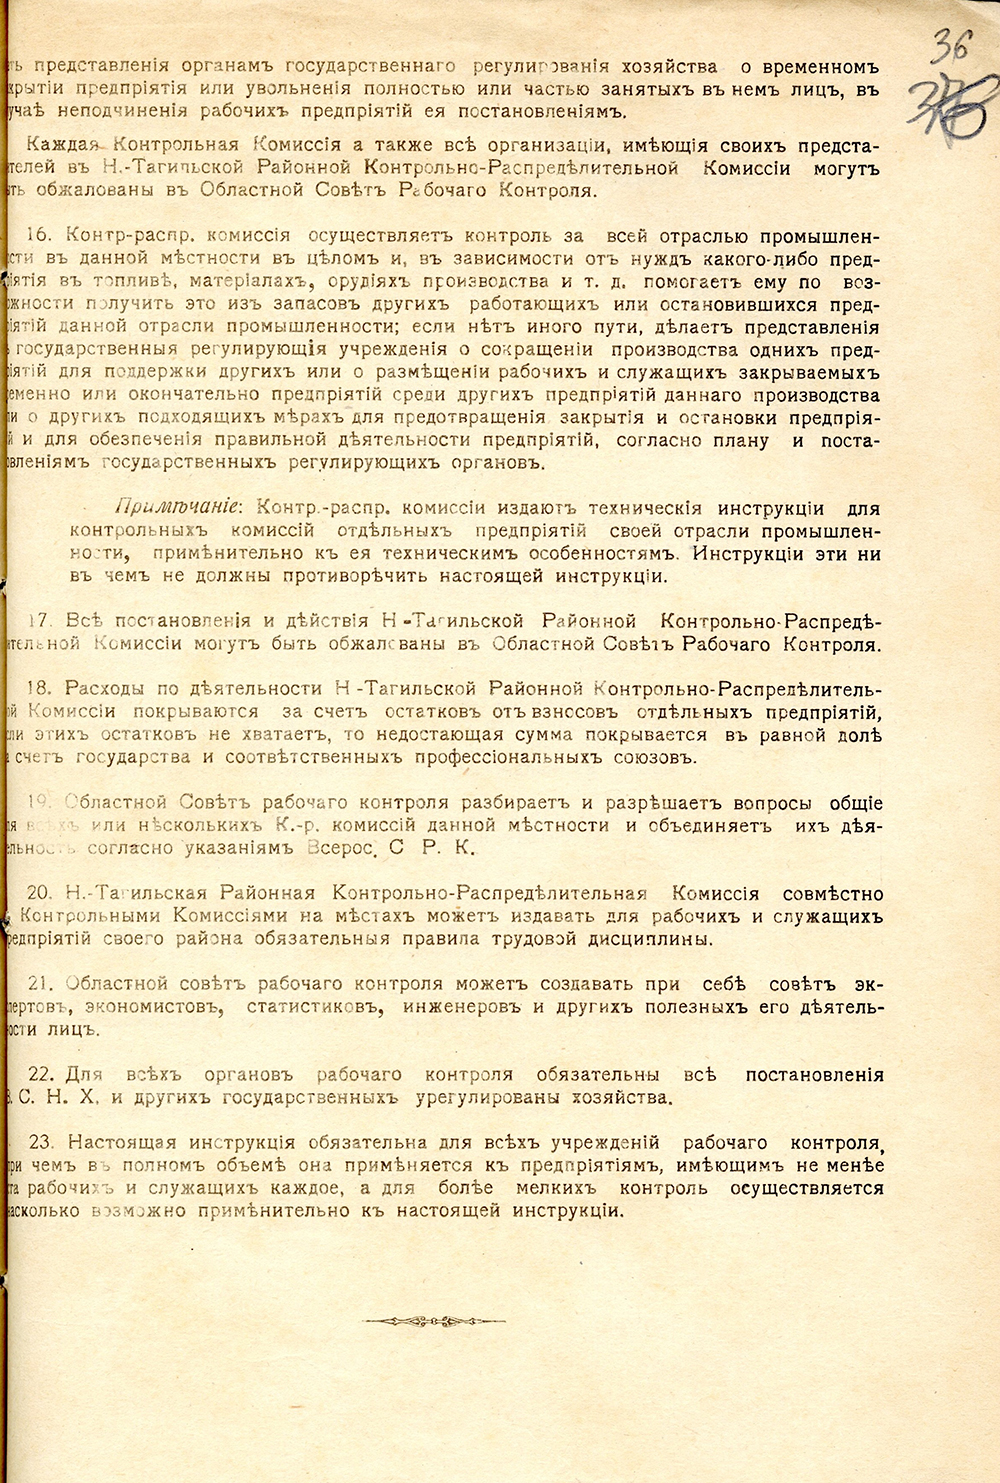 Инструкция по рабочему контролю для предприятий Н-Тагильского района, 1918 год. (НТГИА. Ф.125.Оп.1.Д.9.Л.36)